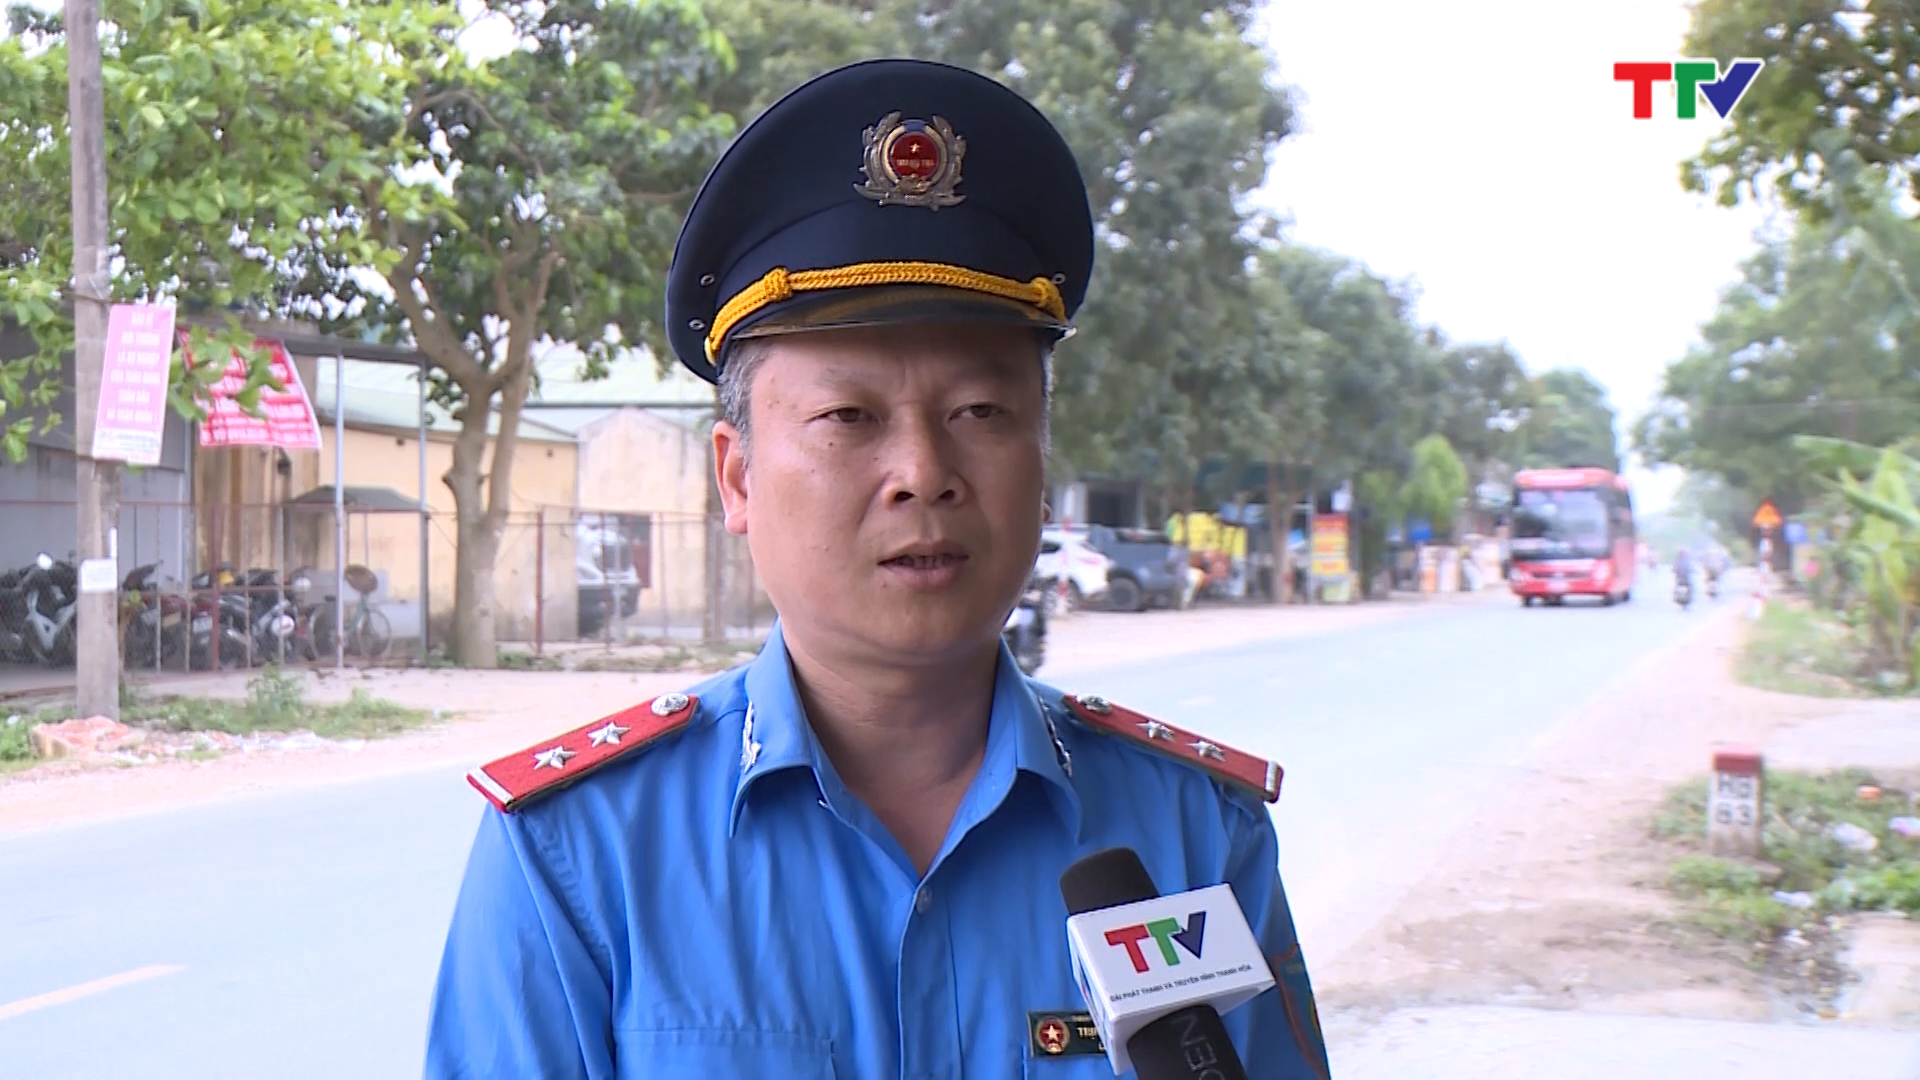 Ông Trịnh Ngọc Châu, Phó trạm trưởng Trạm kiểm tra tải trọng, Thanh tra giao thông cho biết đã phải sử dụng nhiều biện pháp nghiệp vụ để người lái xe hiểu và chấp hành nghiêm quy định về công tác kiểm tra , xử lý vi phạm